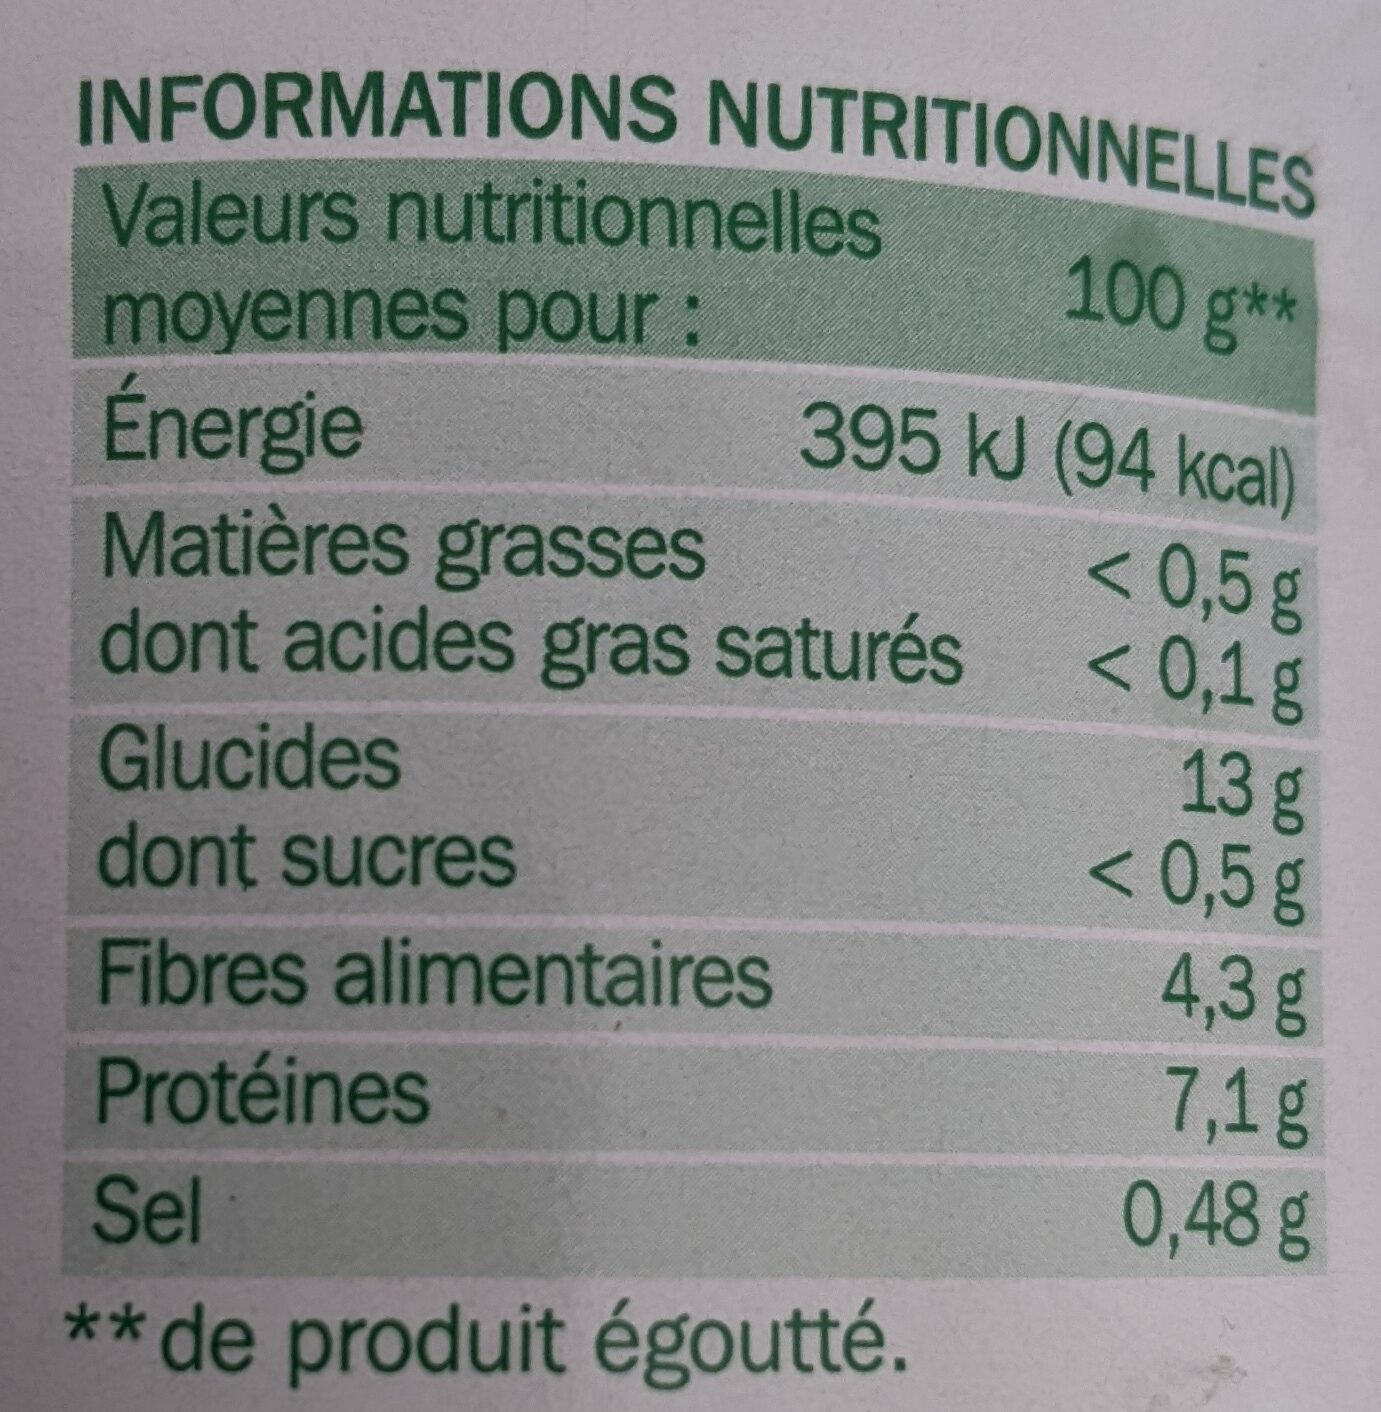 Lentilles - Nutrition facts - fr